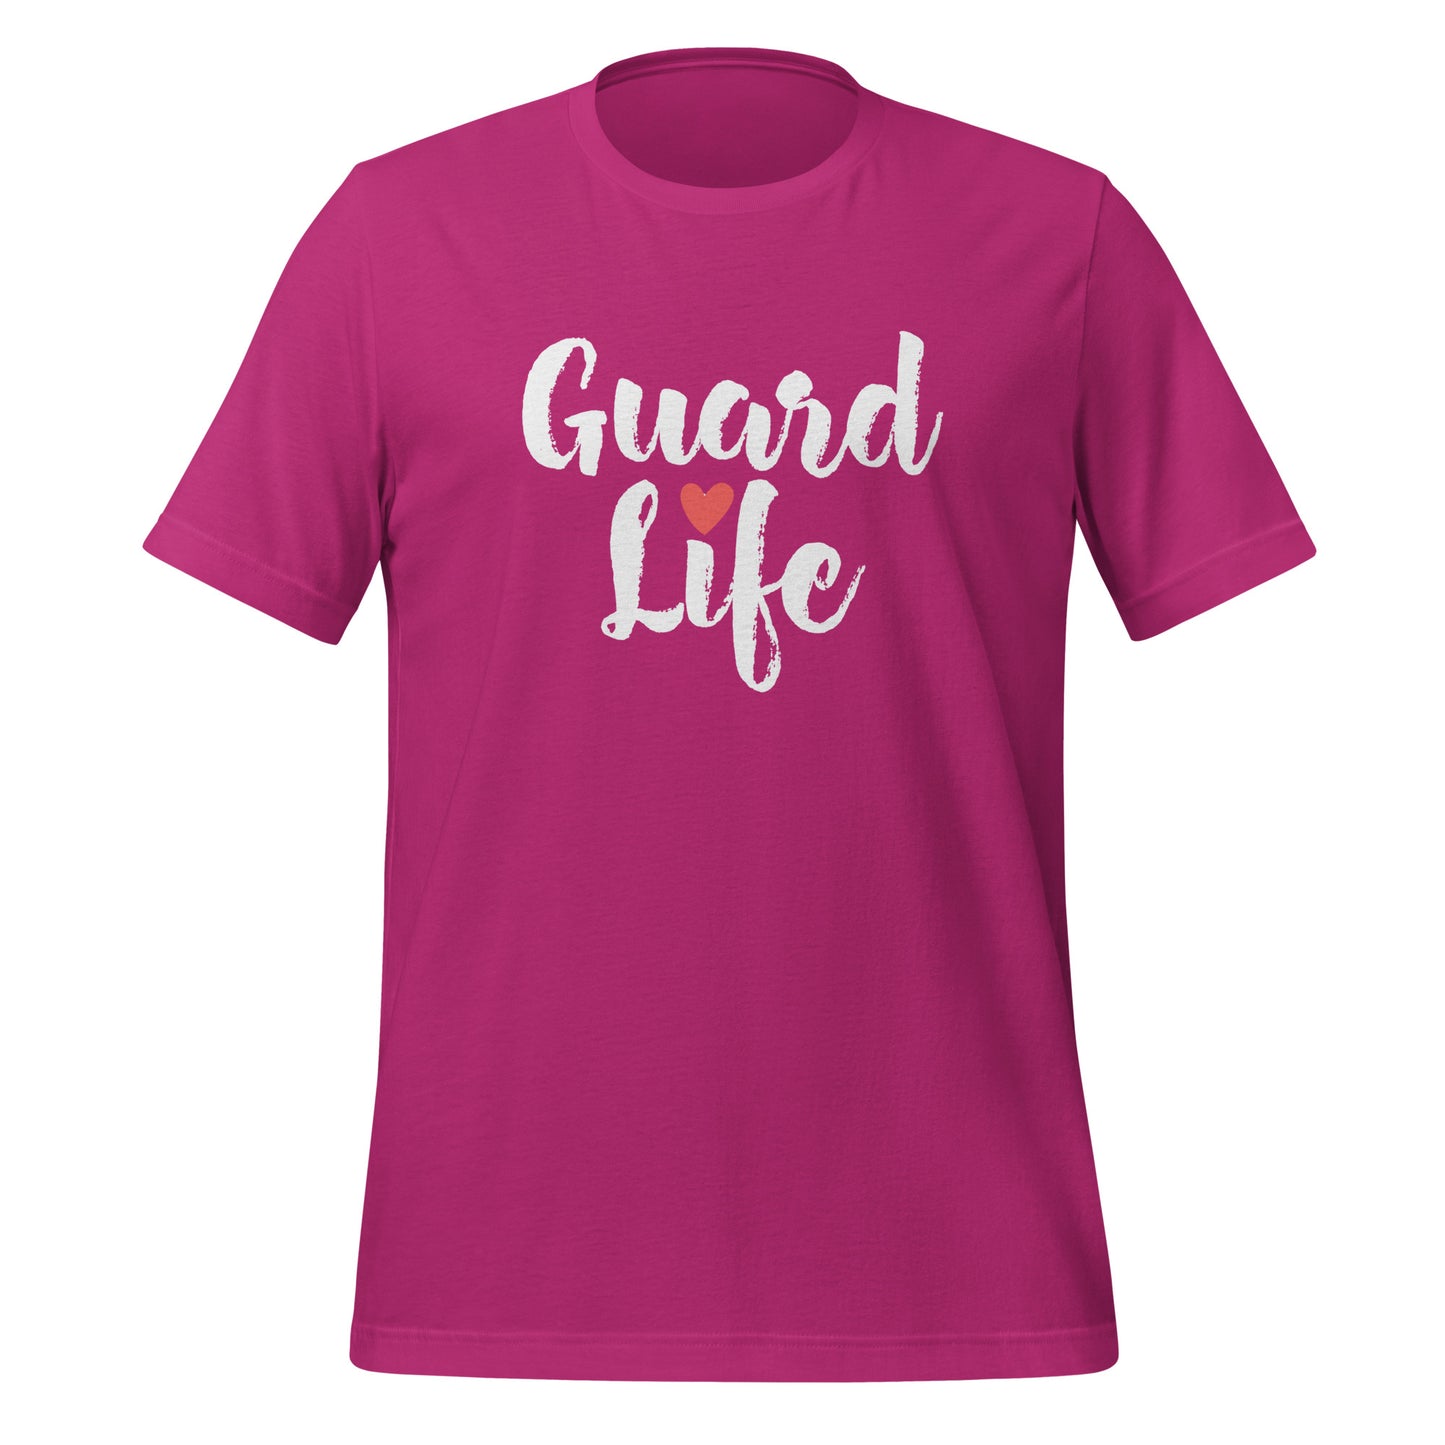 Guard Life V.2 (Color Guard) Adult Unisex t-shirt